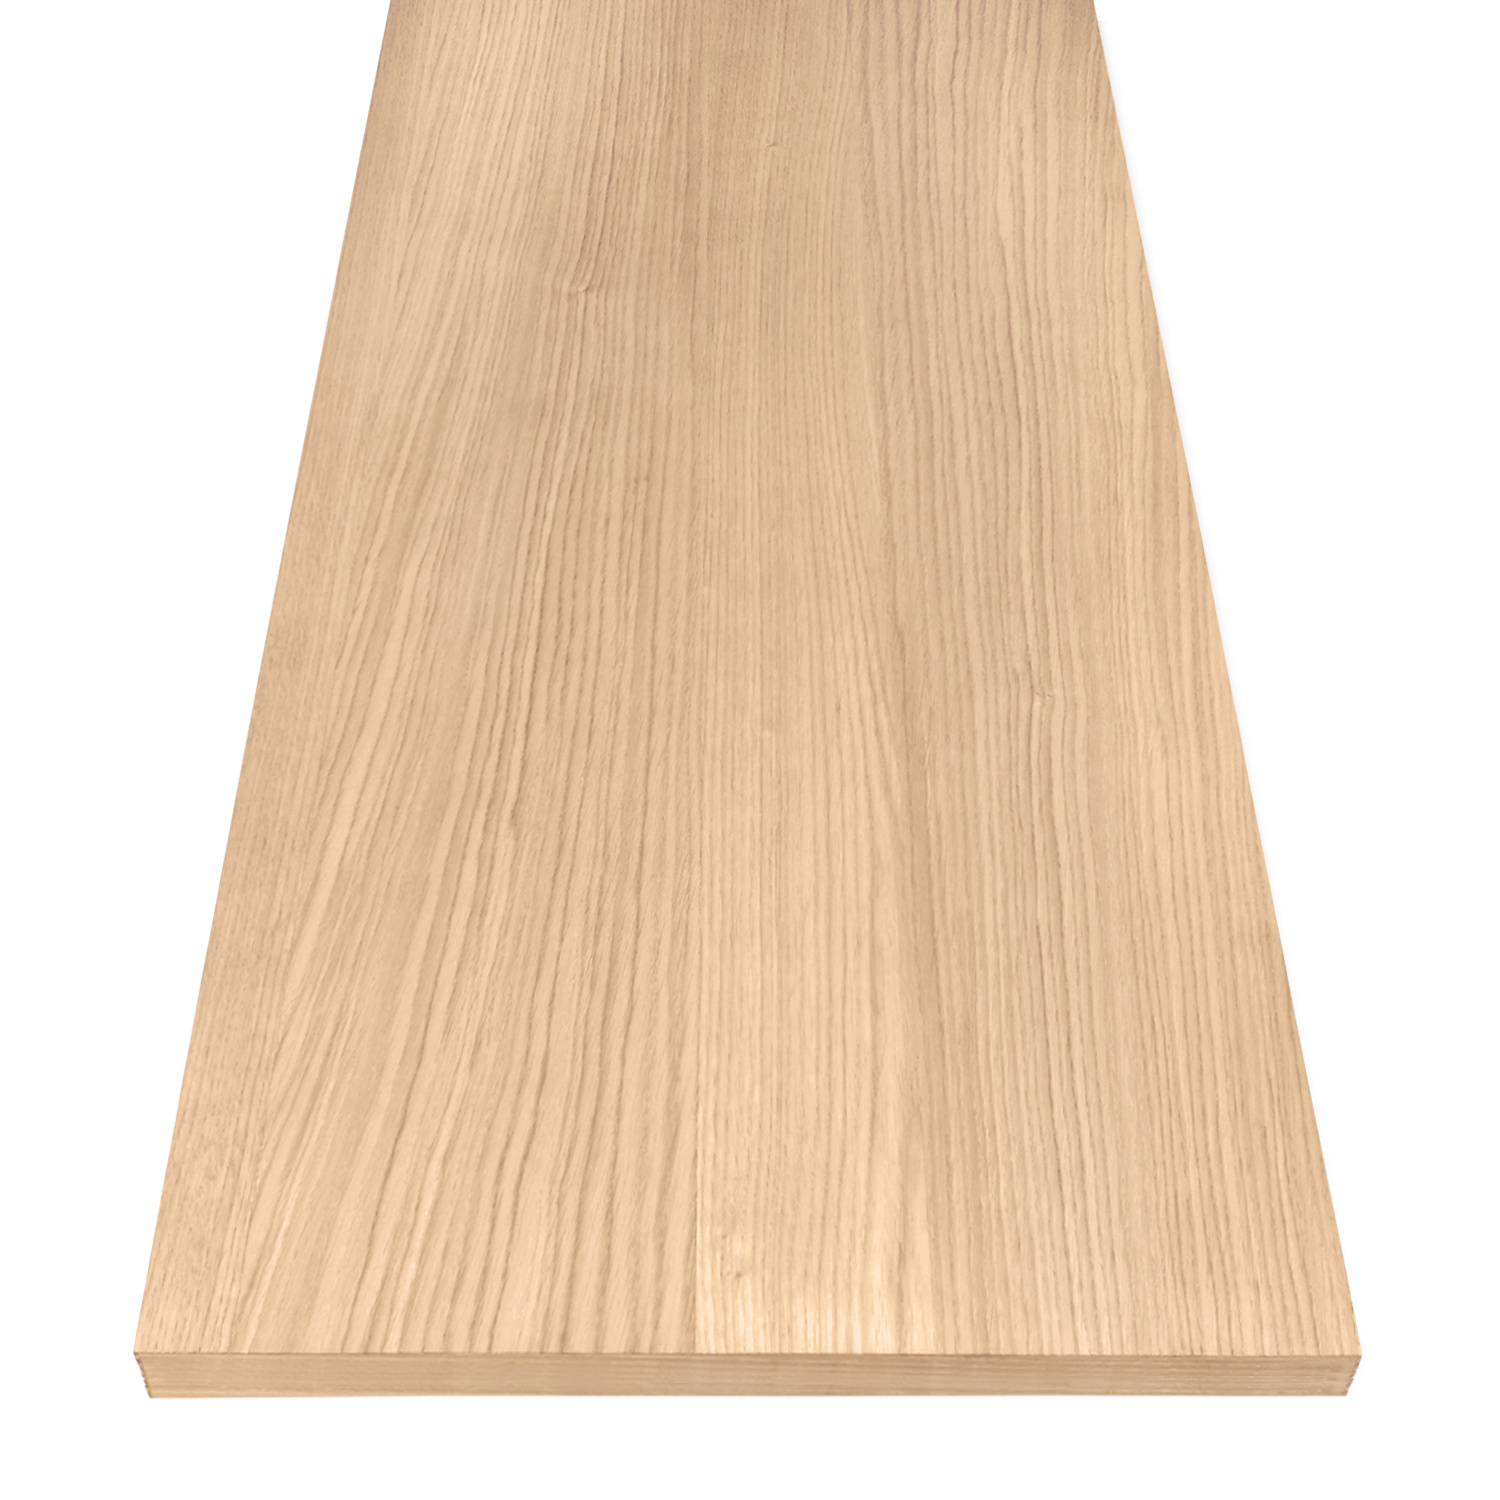  Eichenfurnier nach Maß - 4 cm dick - Echtholzfurnier Eichenholz A-Qualität - Furniereiche Platte (Spanplatte Eiche furniert)